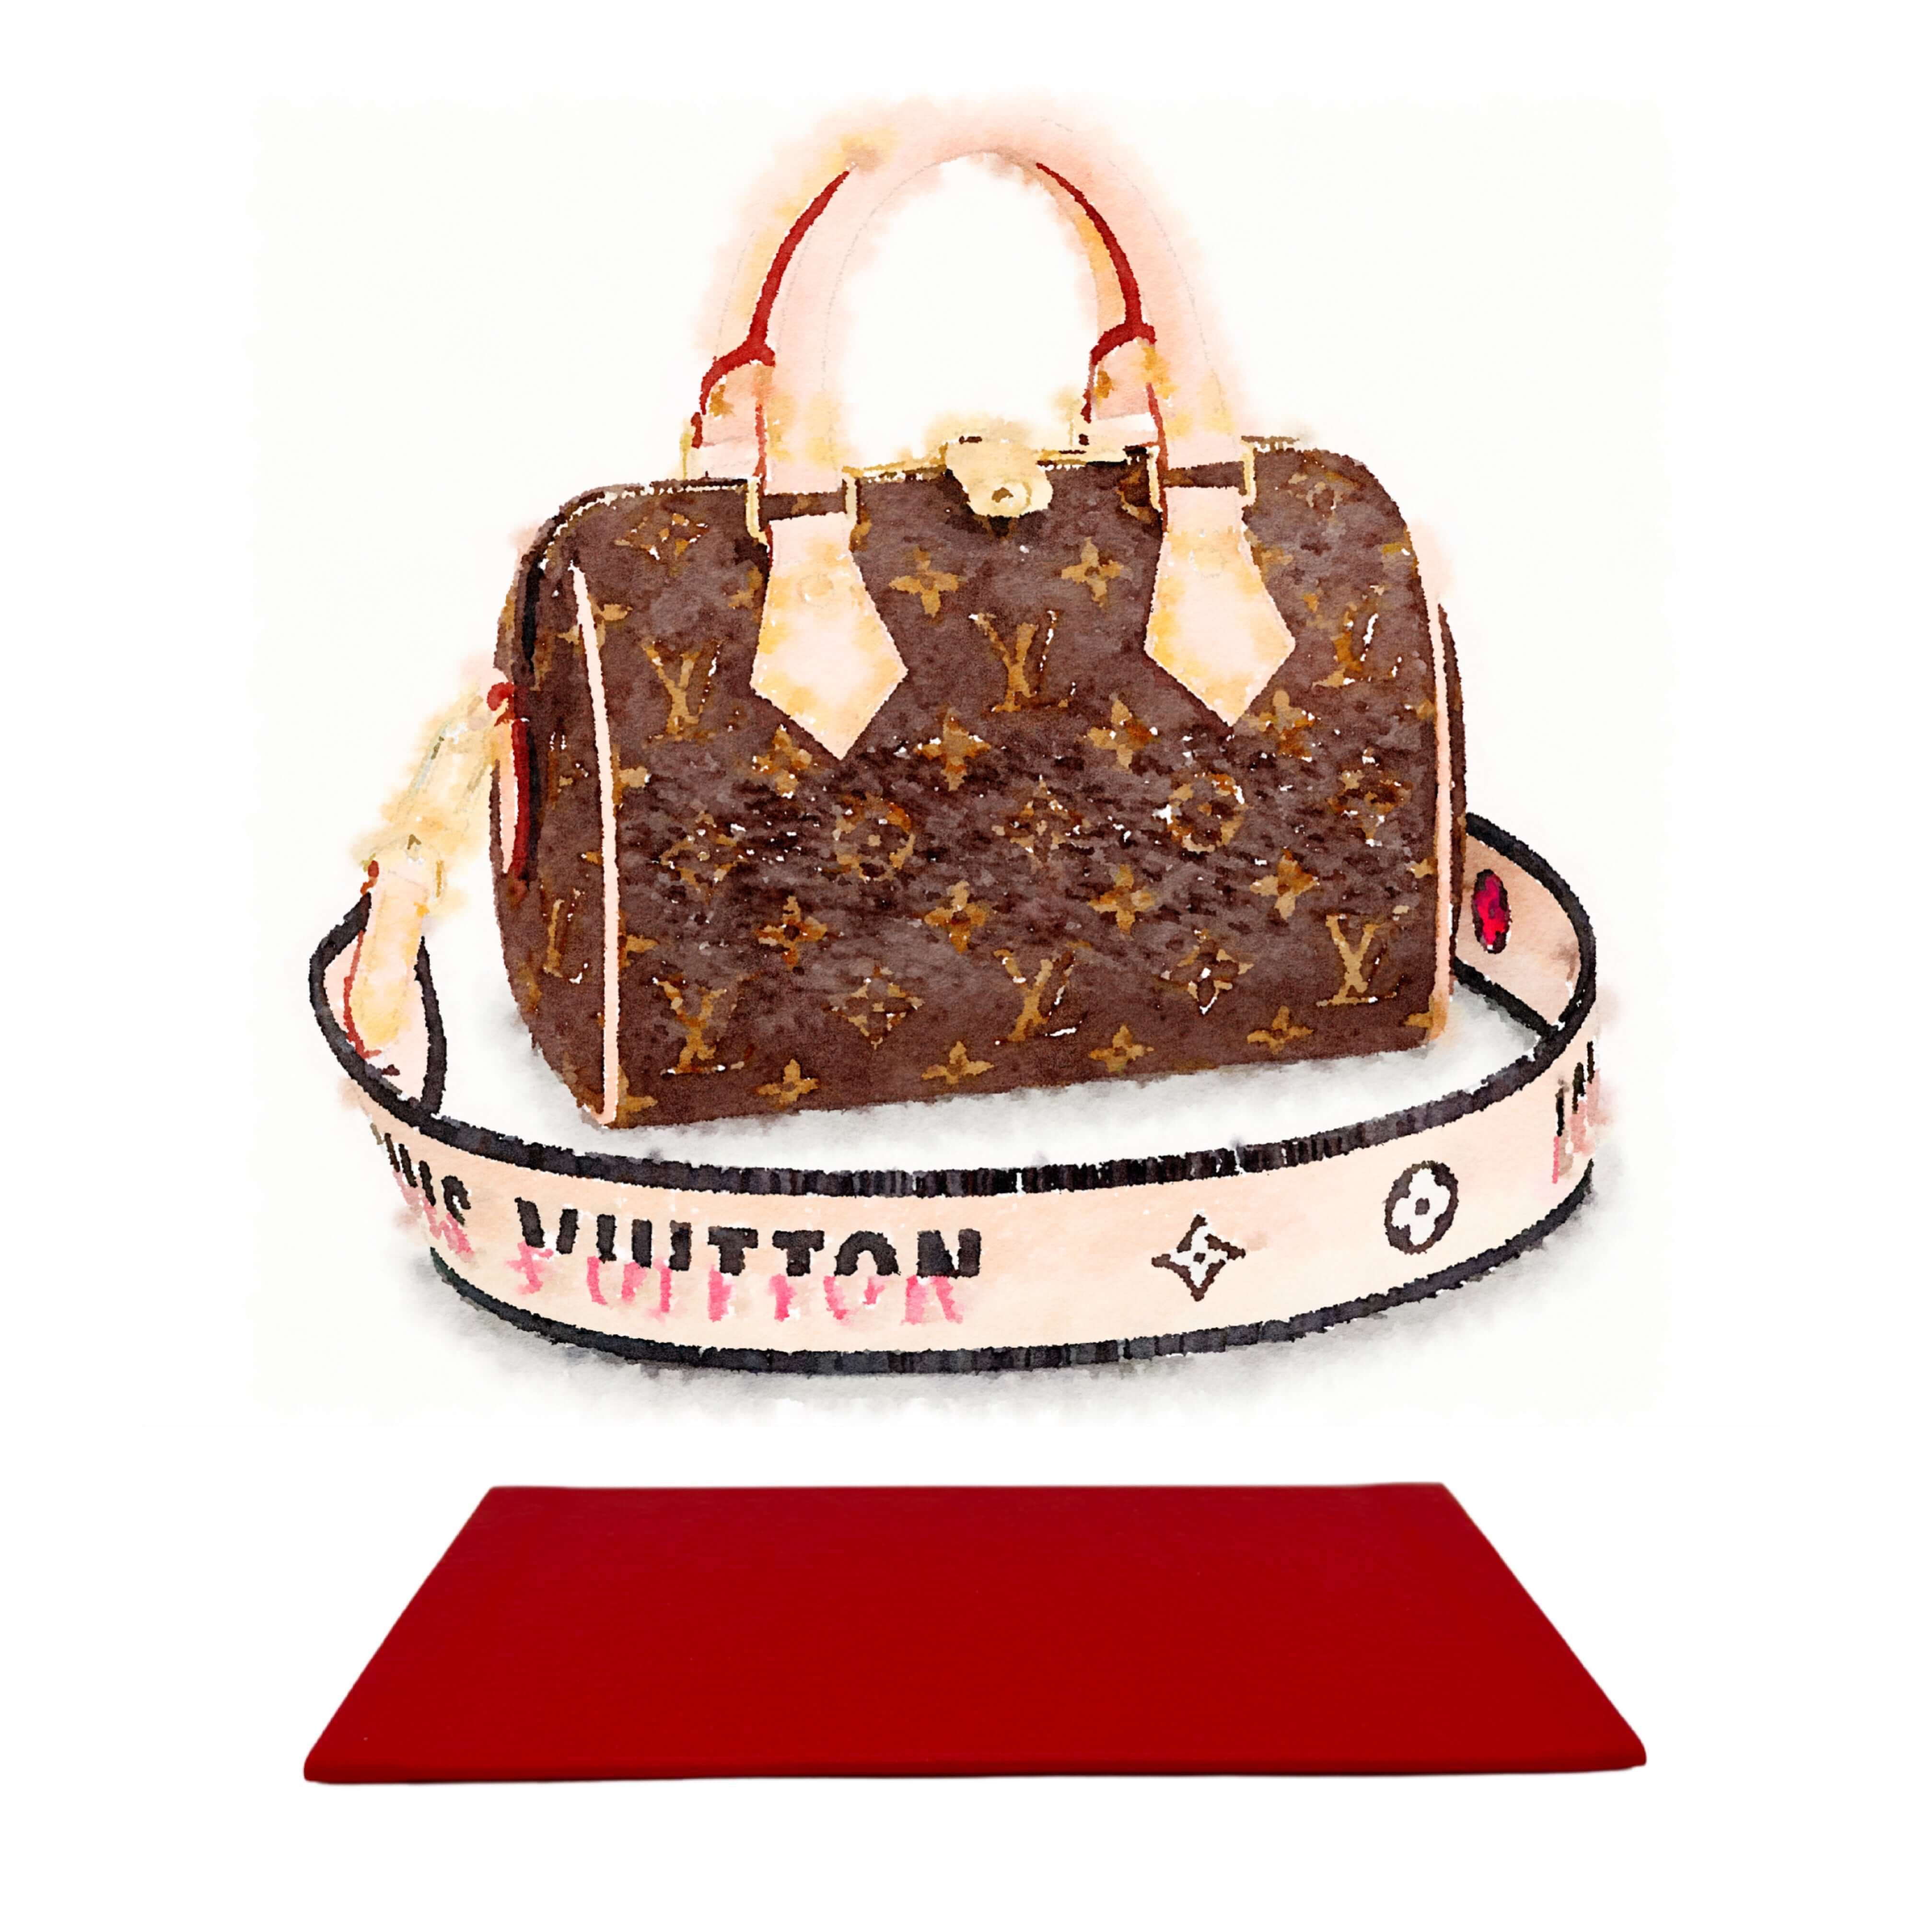 Shop in Style - Louis Vuitton Handbag Cake